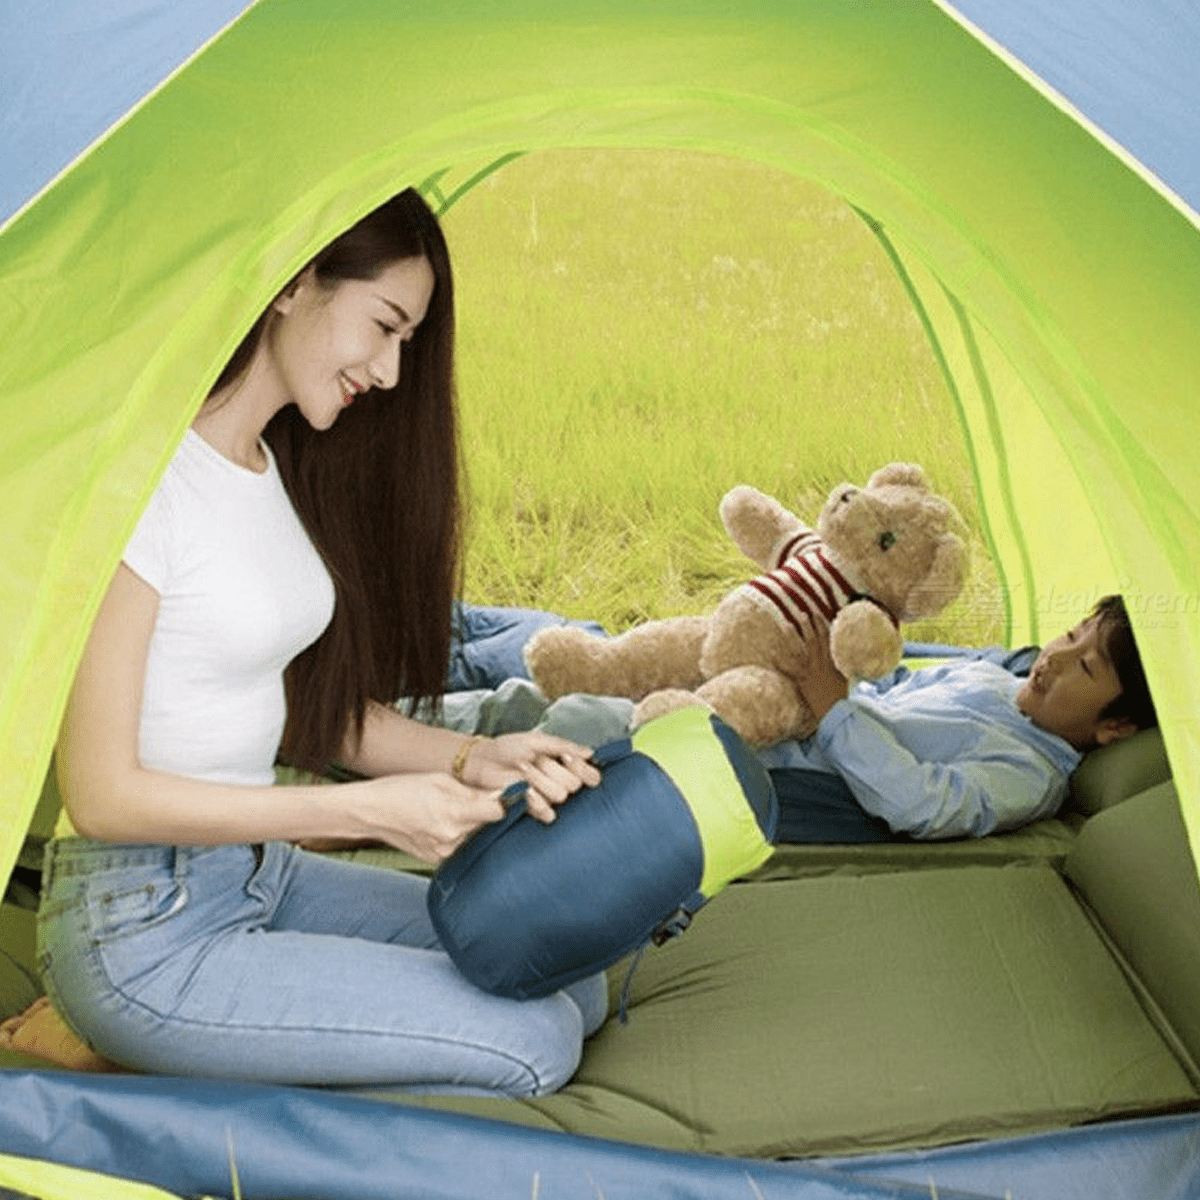 Original Xiaomi Mijia Zaofeng Sleeping Bag For Outdoor Camping